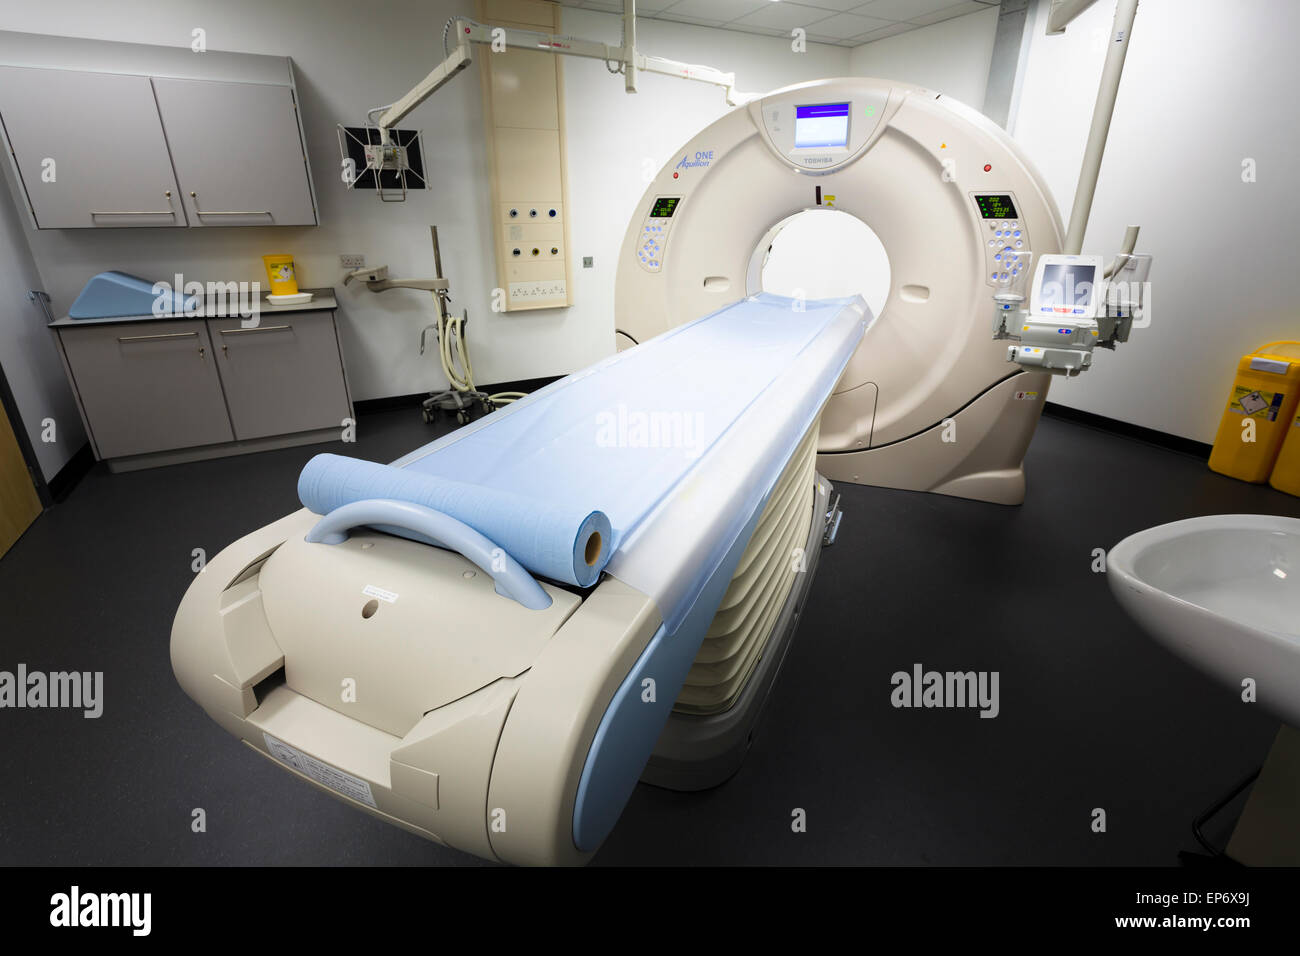 L'imagerie par résonance magnétique IRM imagerie médicale de l'hôpital à l'hôpital Banque D'Images